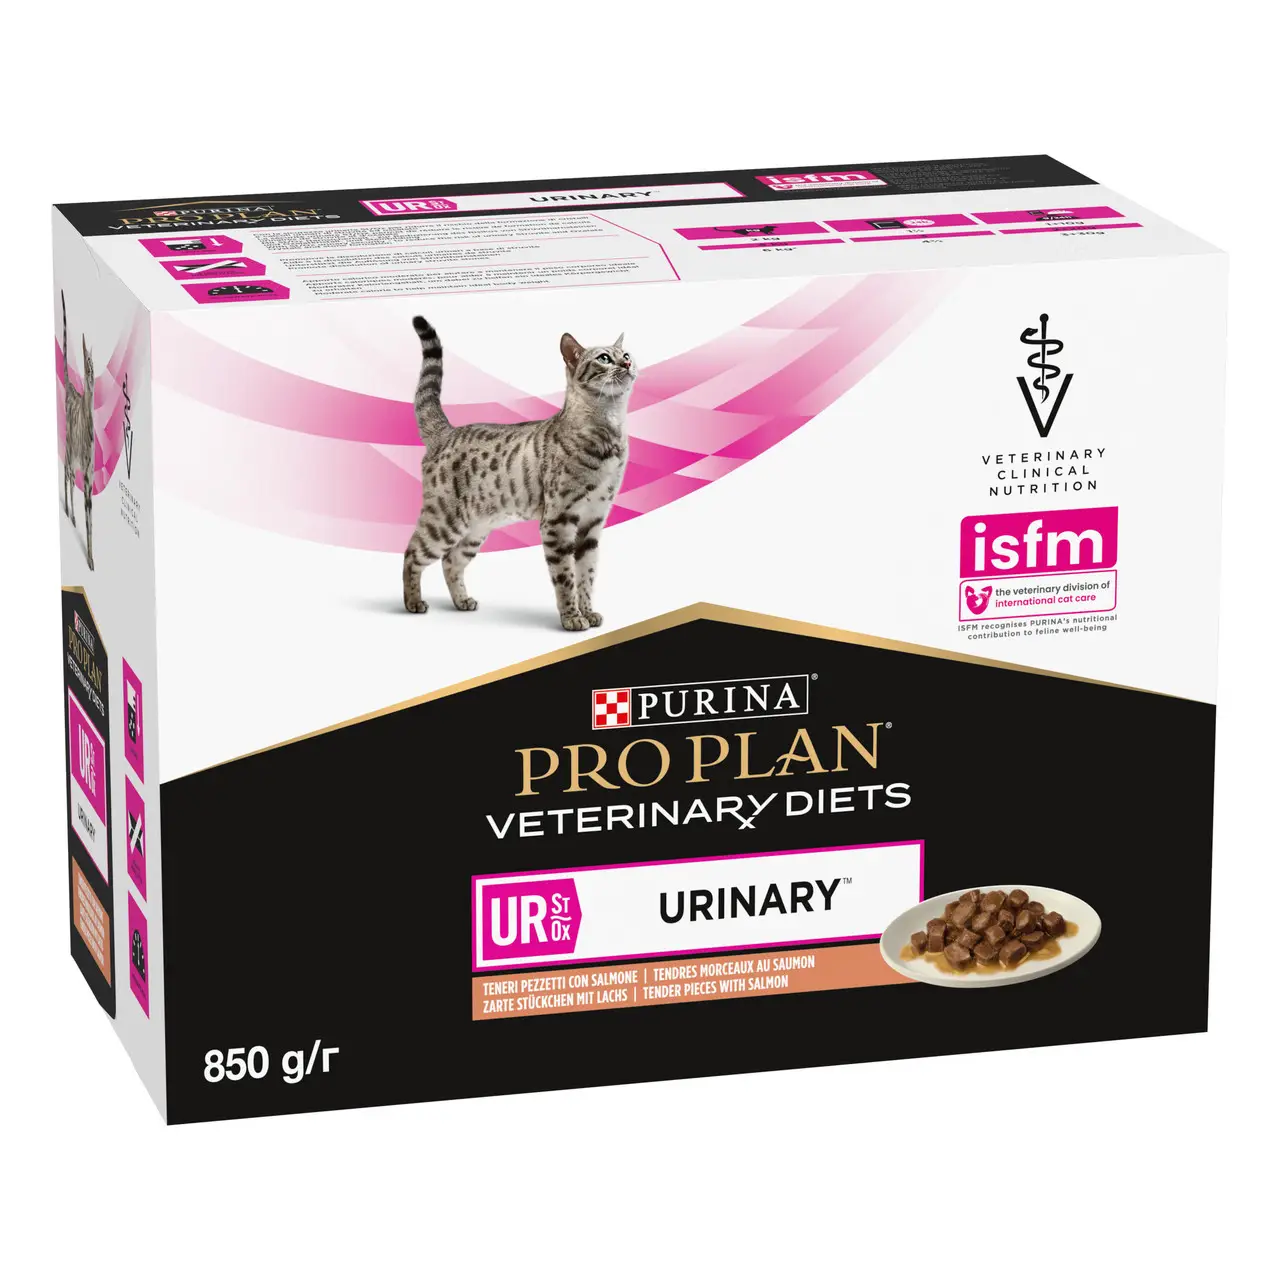 Purina Pro Plan Veterinary Diets UR лікувальний корм для котів c сечокам'яною хворобою 85г * 10шт (лосось)1